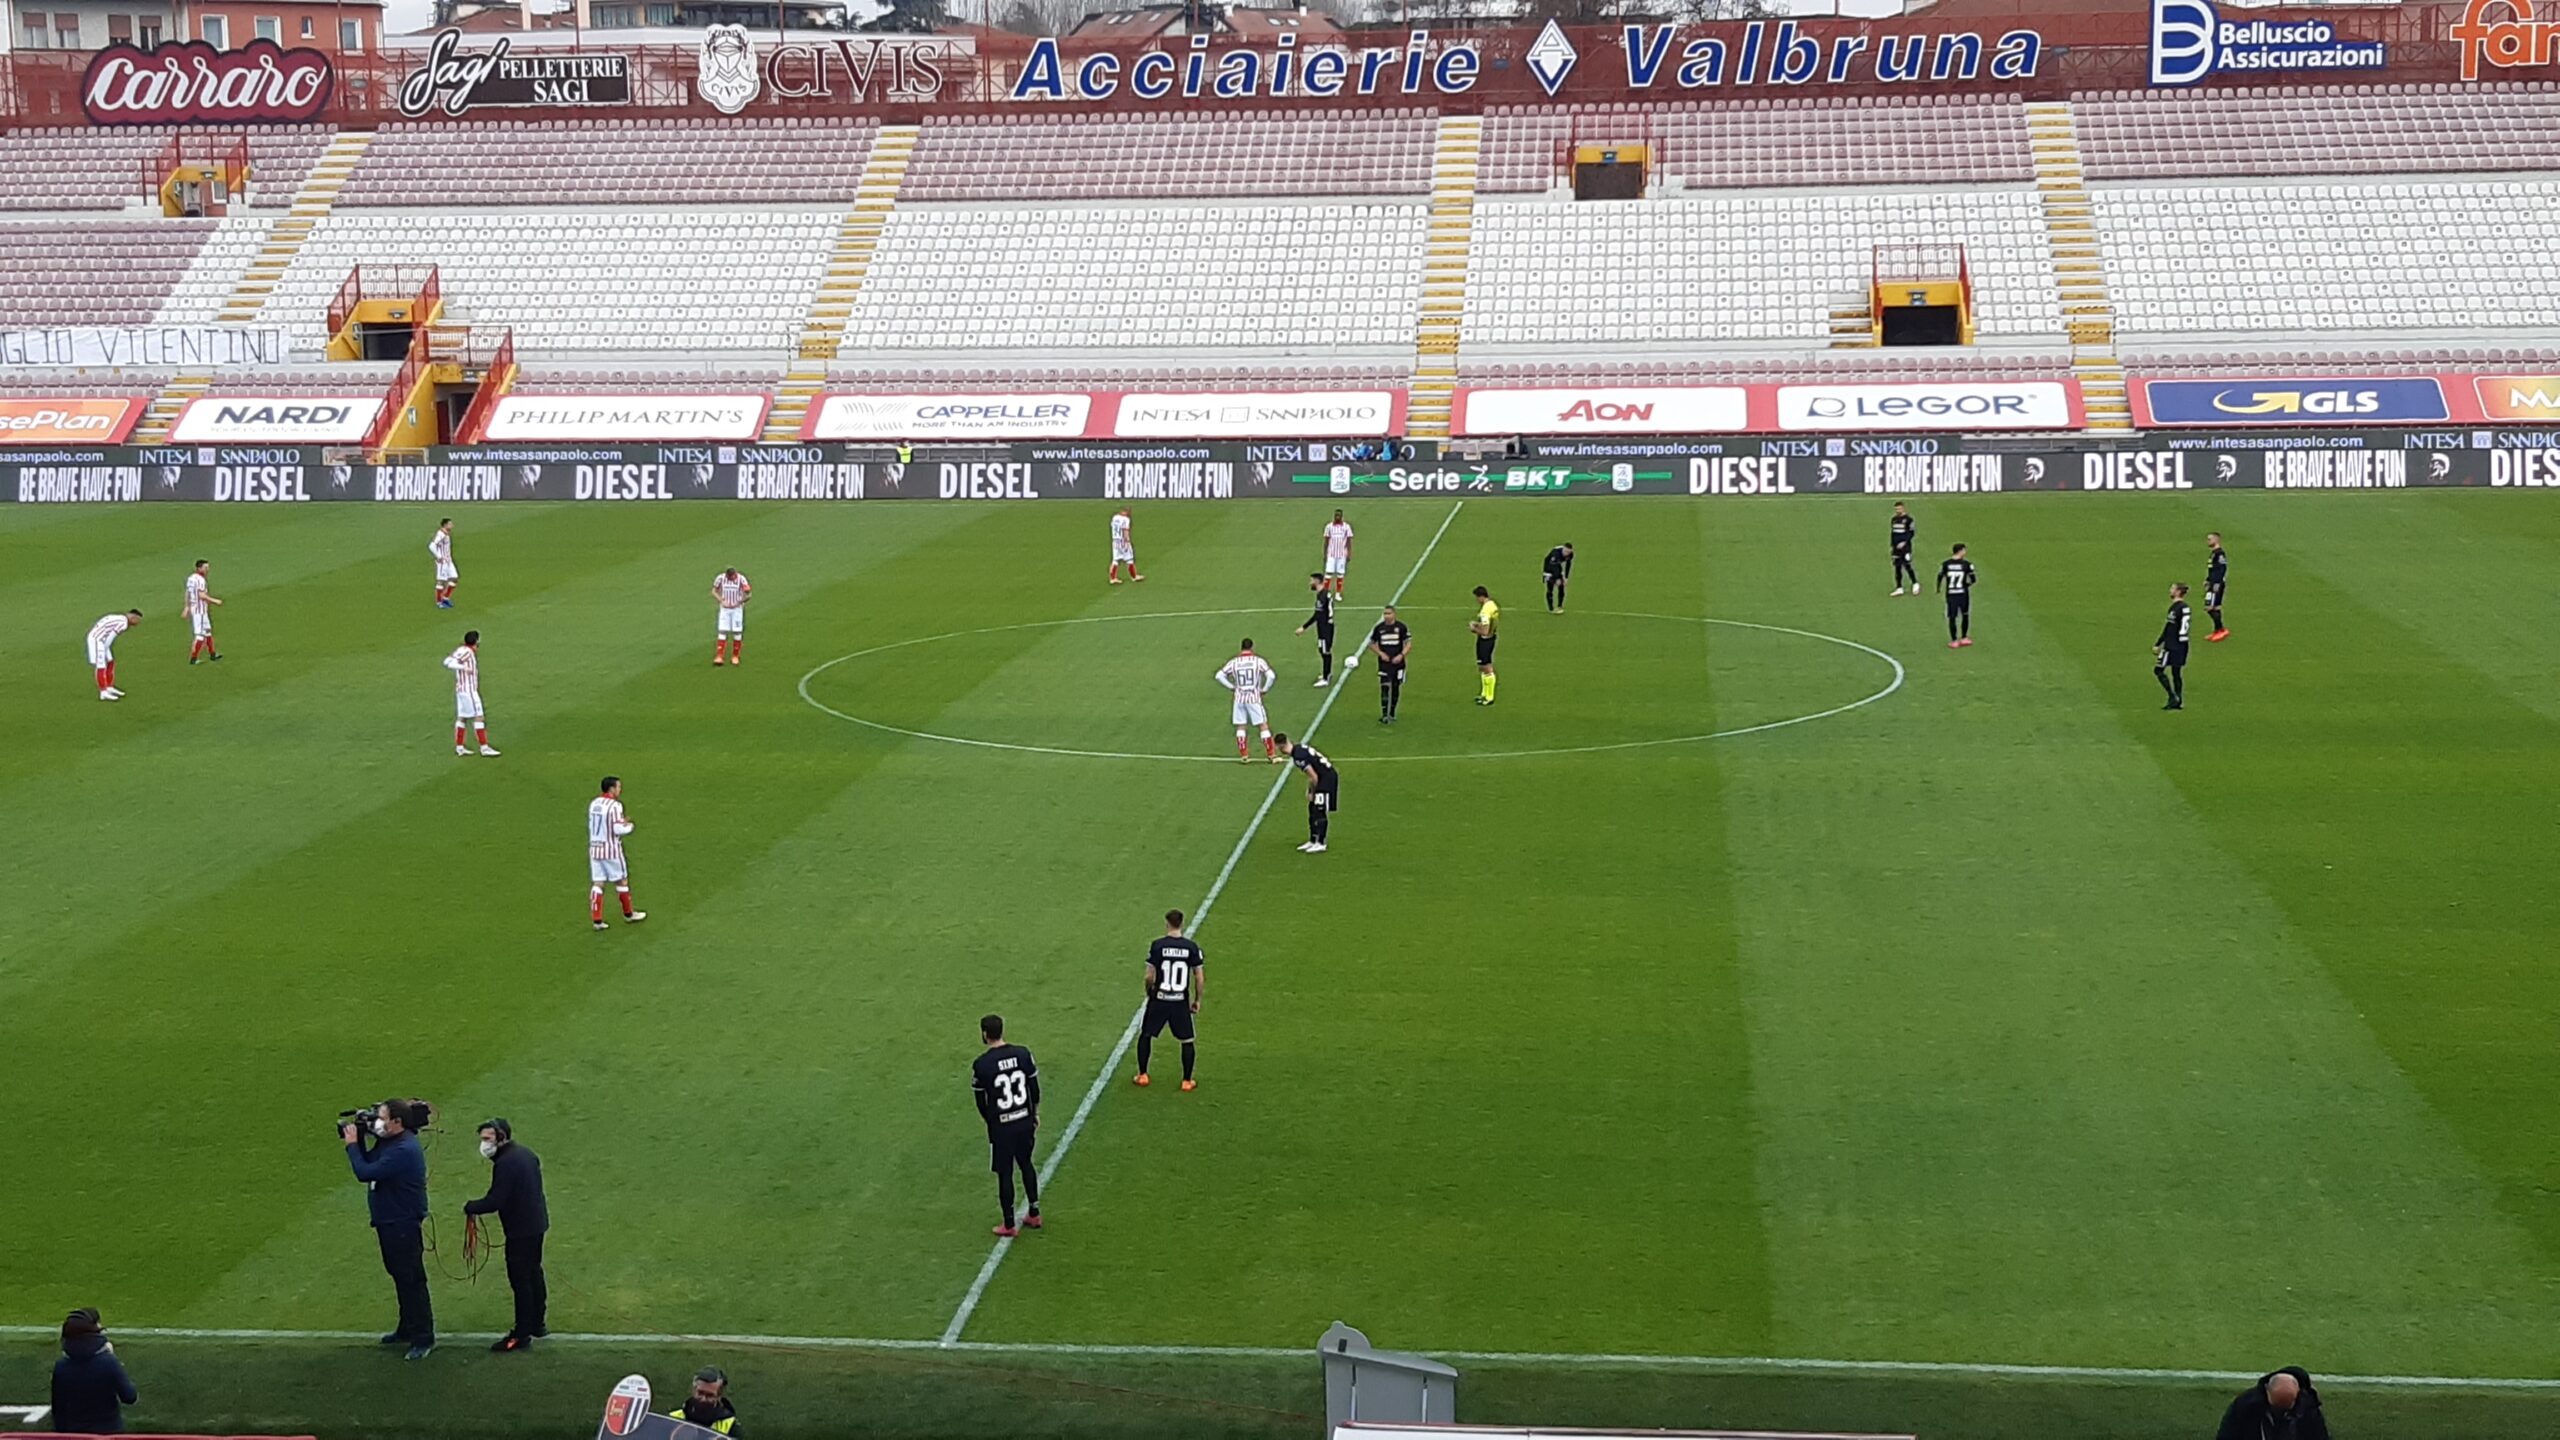 L.R. Vicenza-Ascoli 2-1 (13^ giornata)